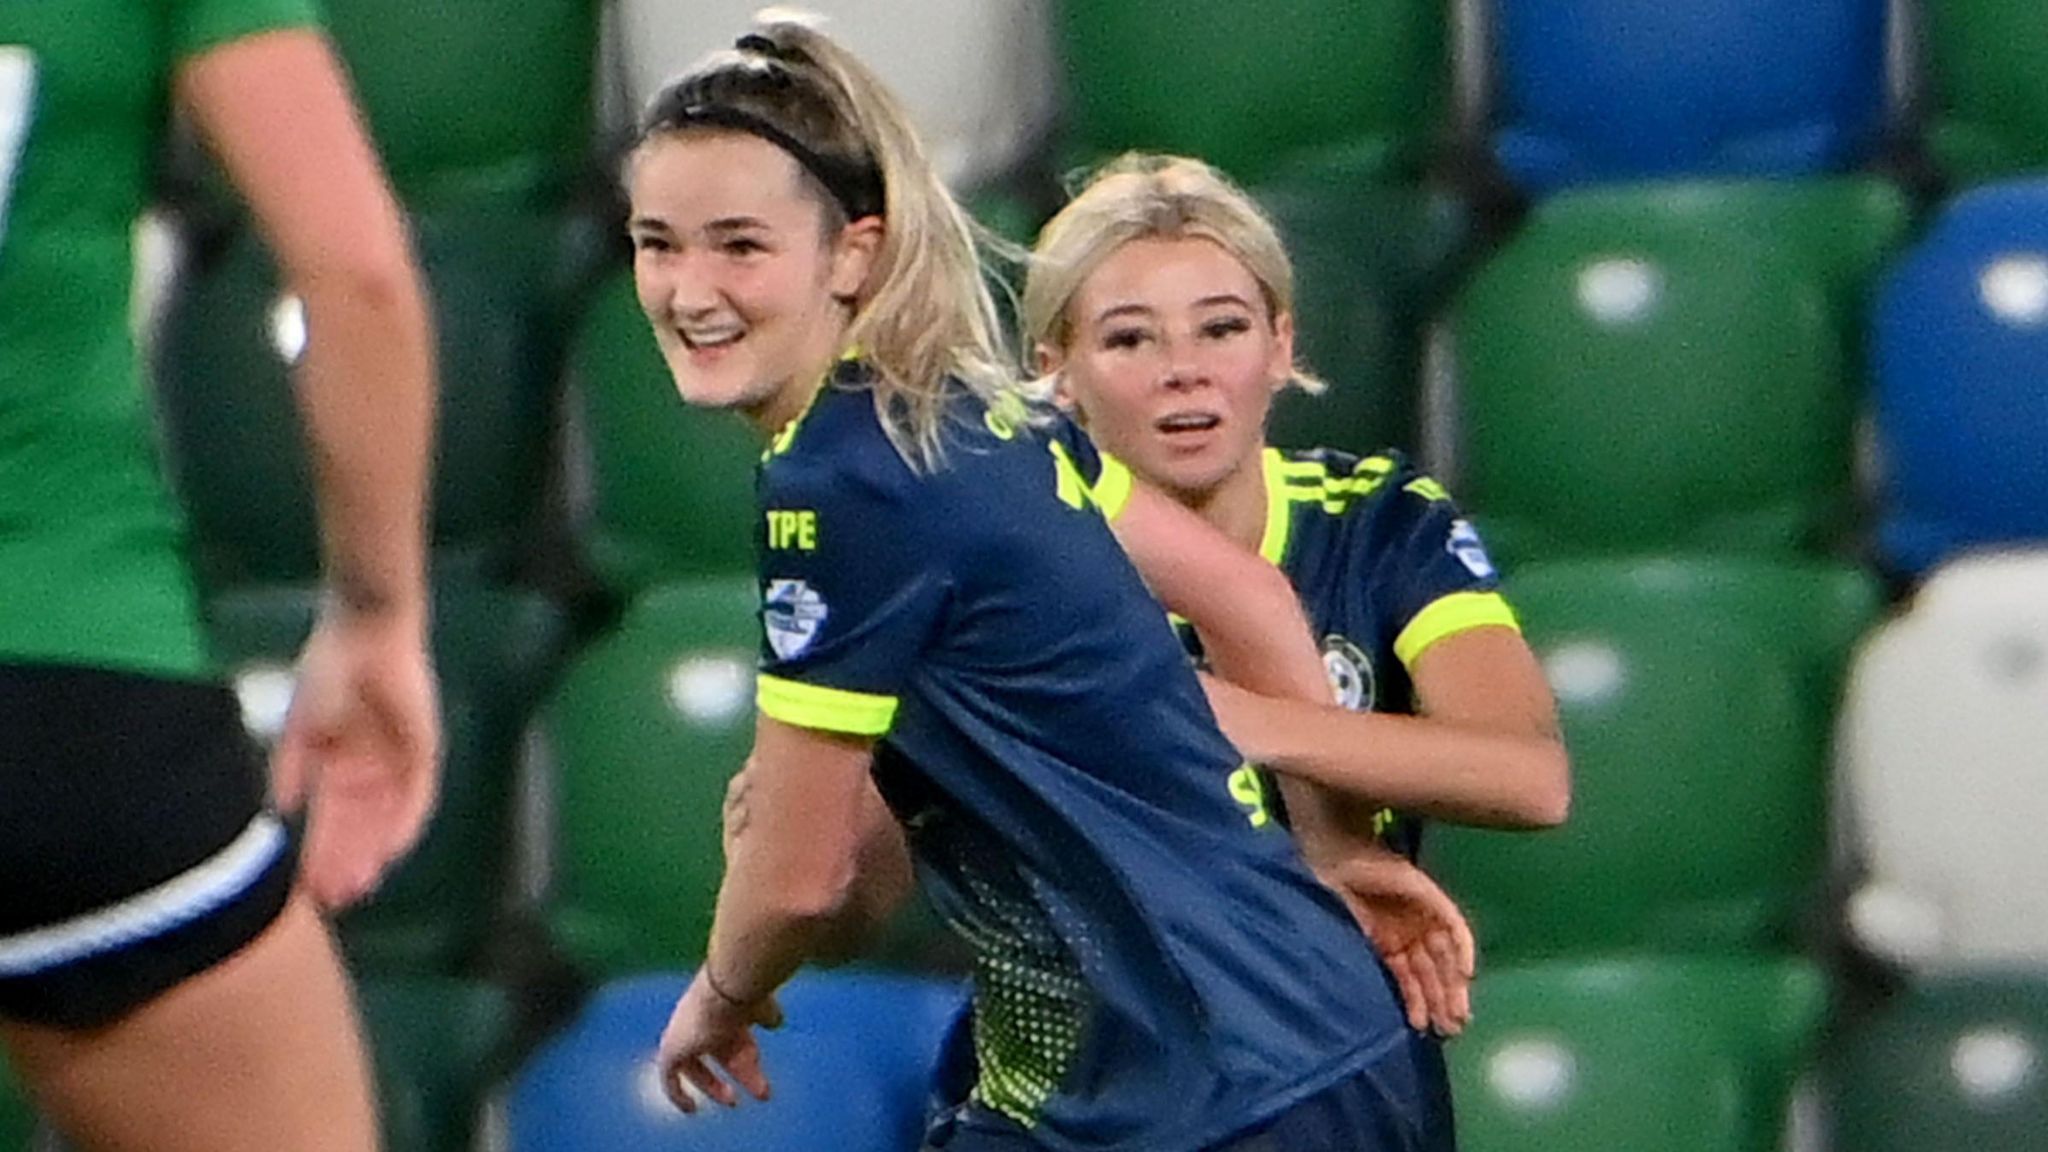 Tara O'Connor celebrates scoring a goal